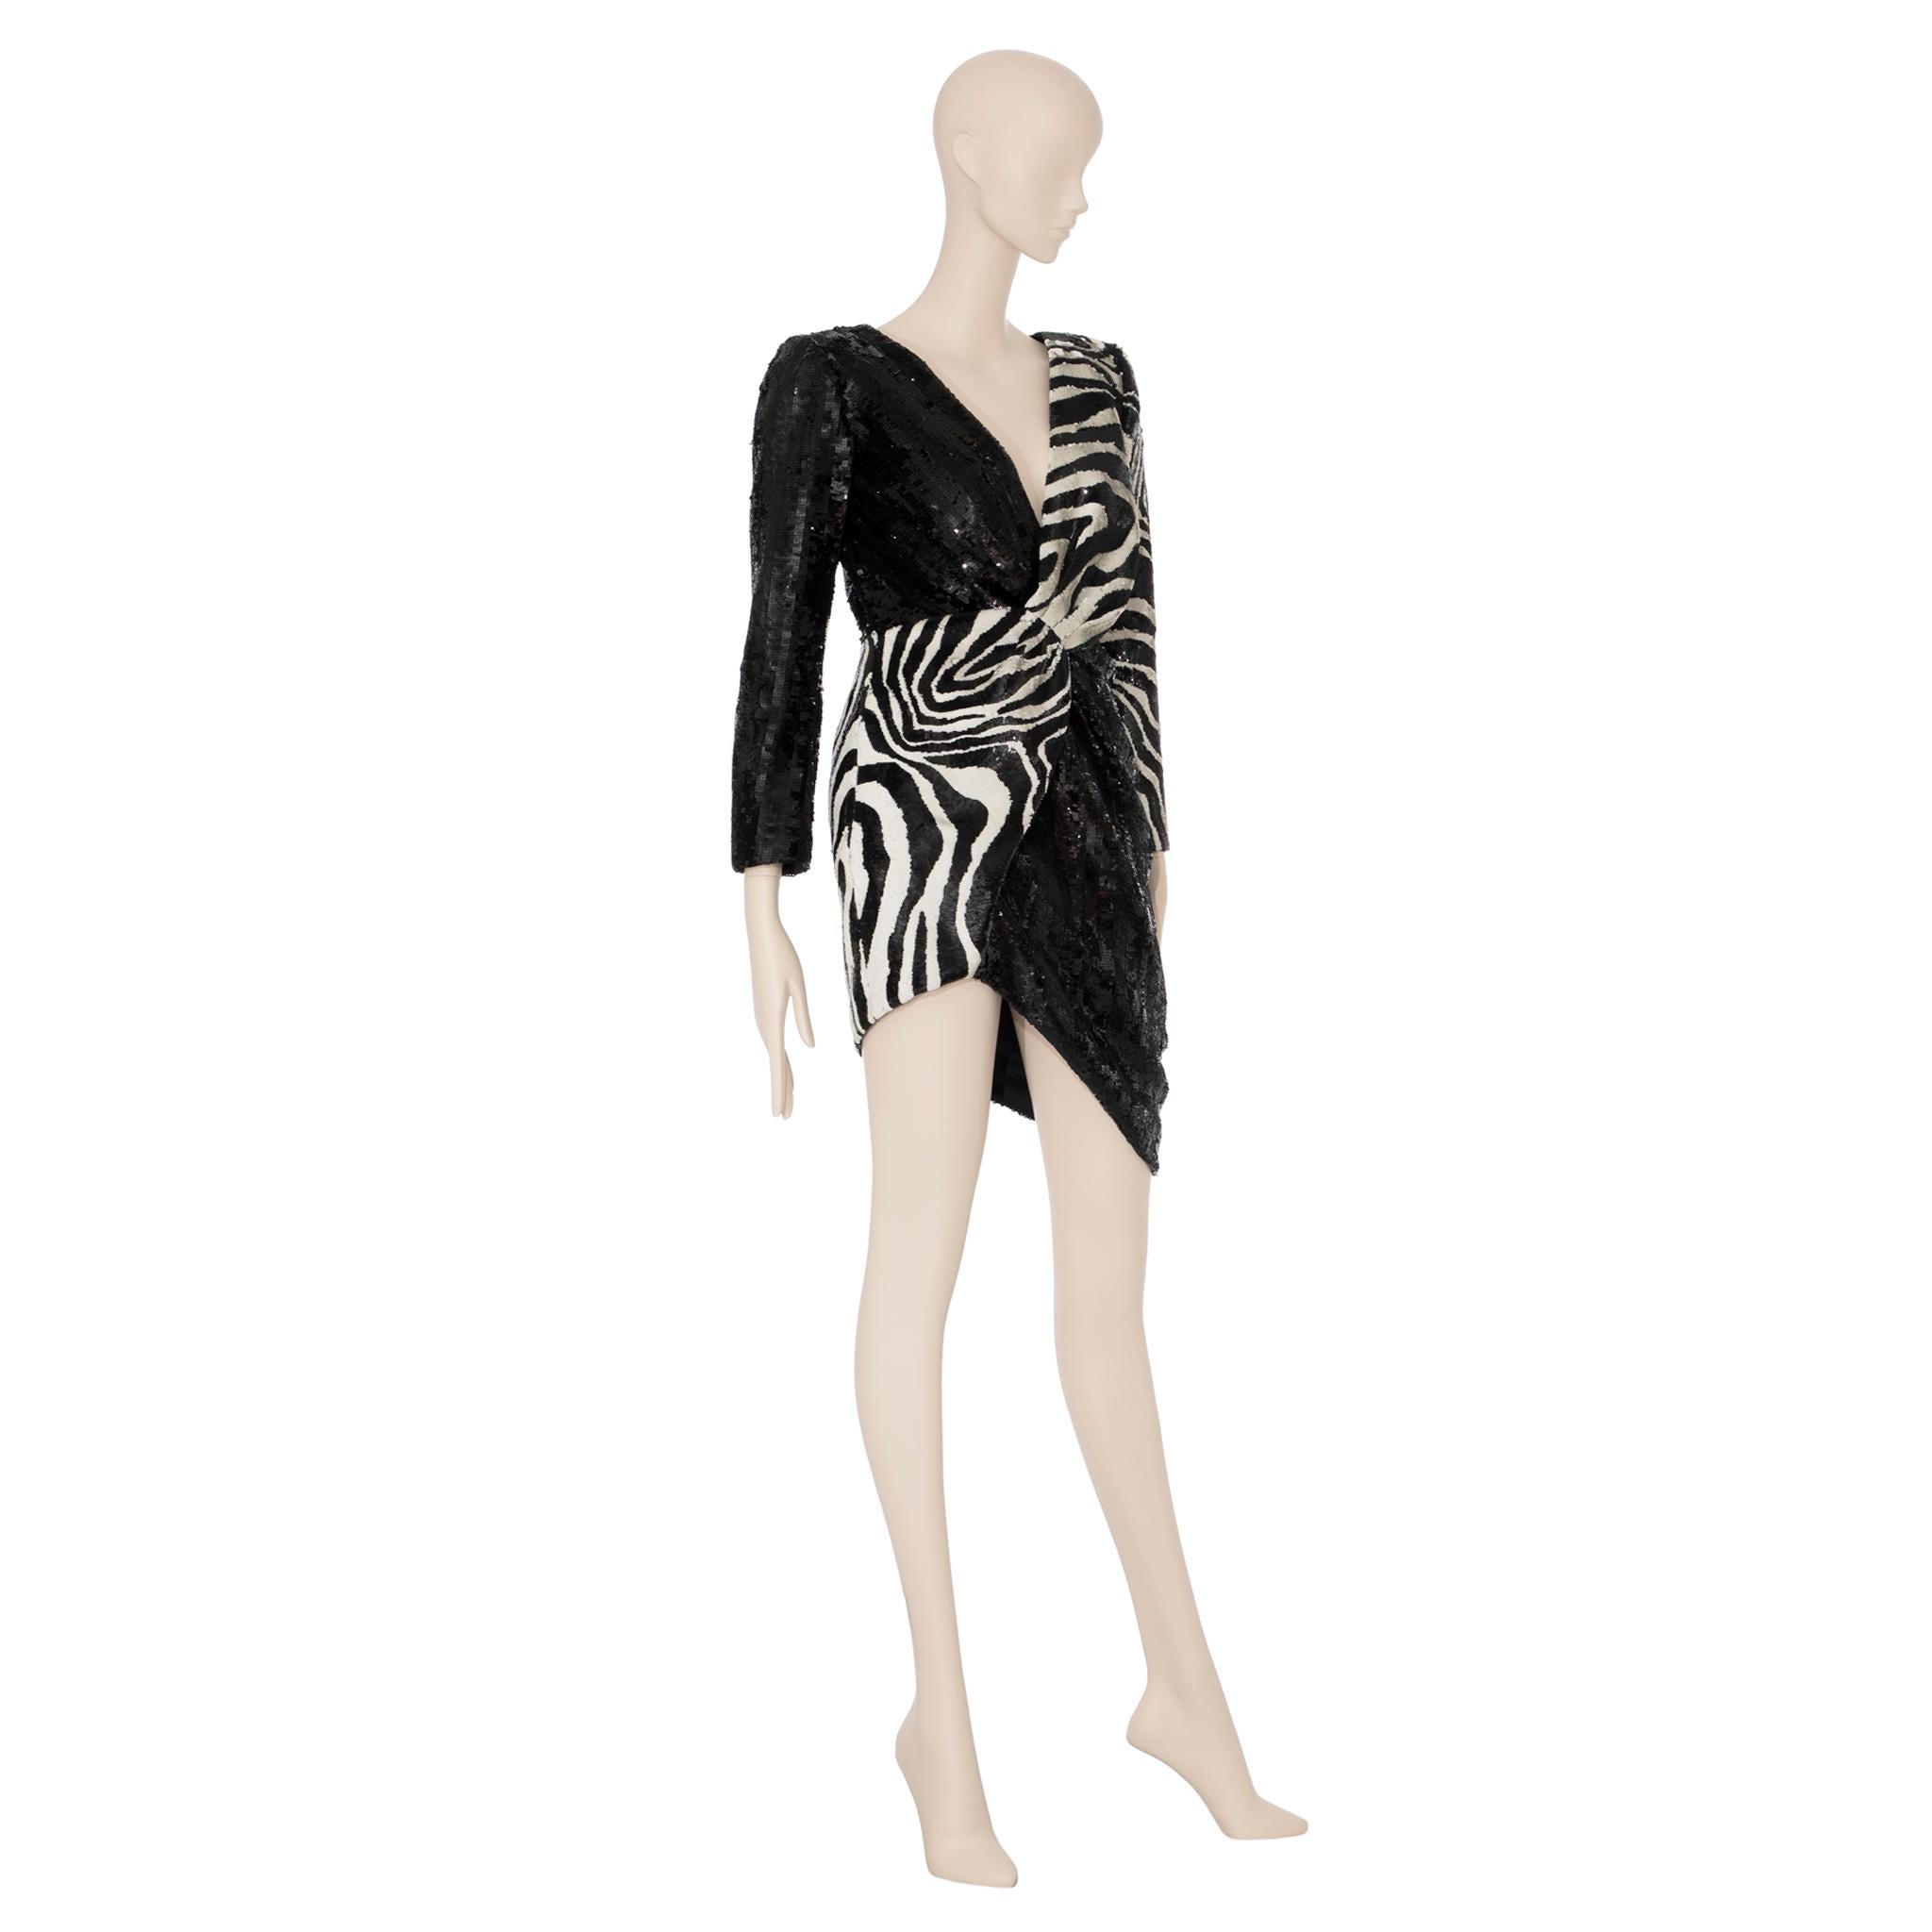 Saint Laurent by Hedi Slimane Asymmetric Zebra Print Sequin Dress 36 FR For Sale 6